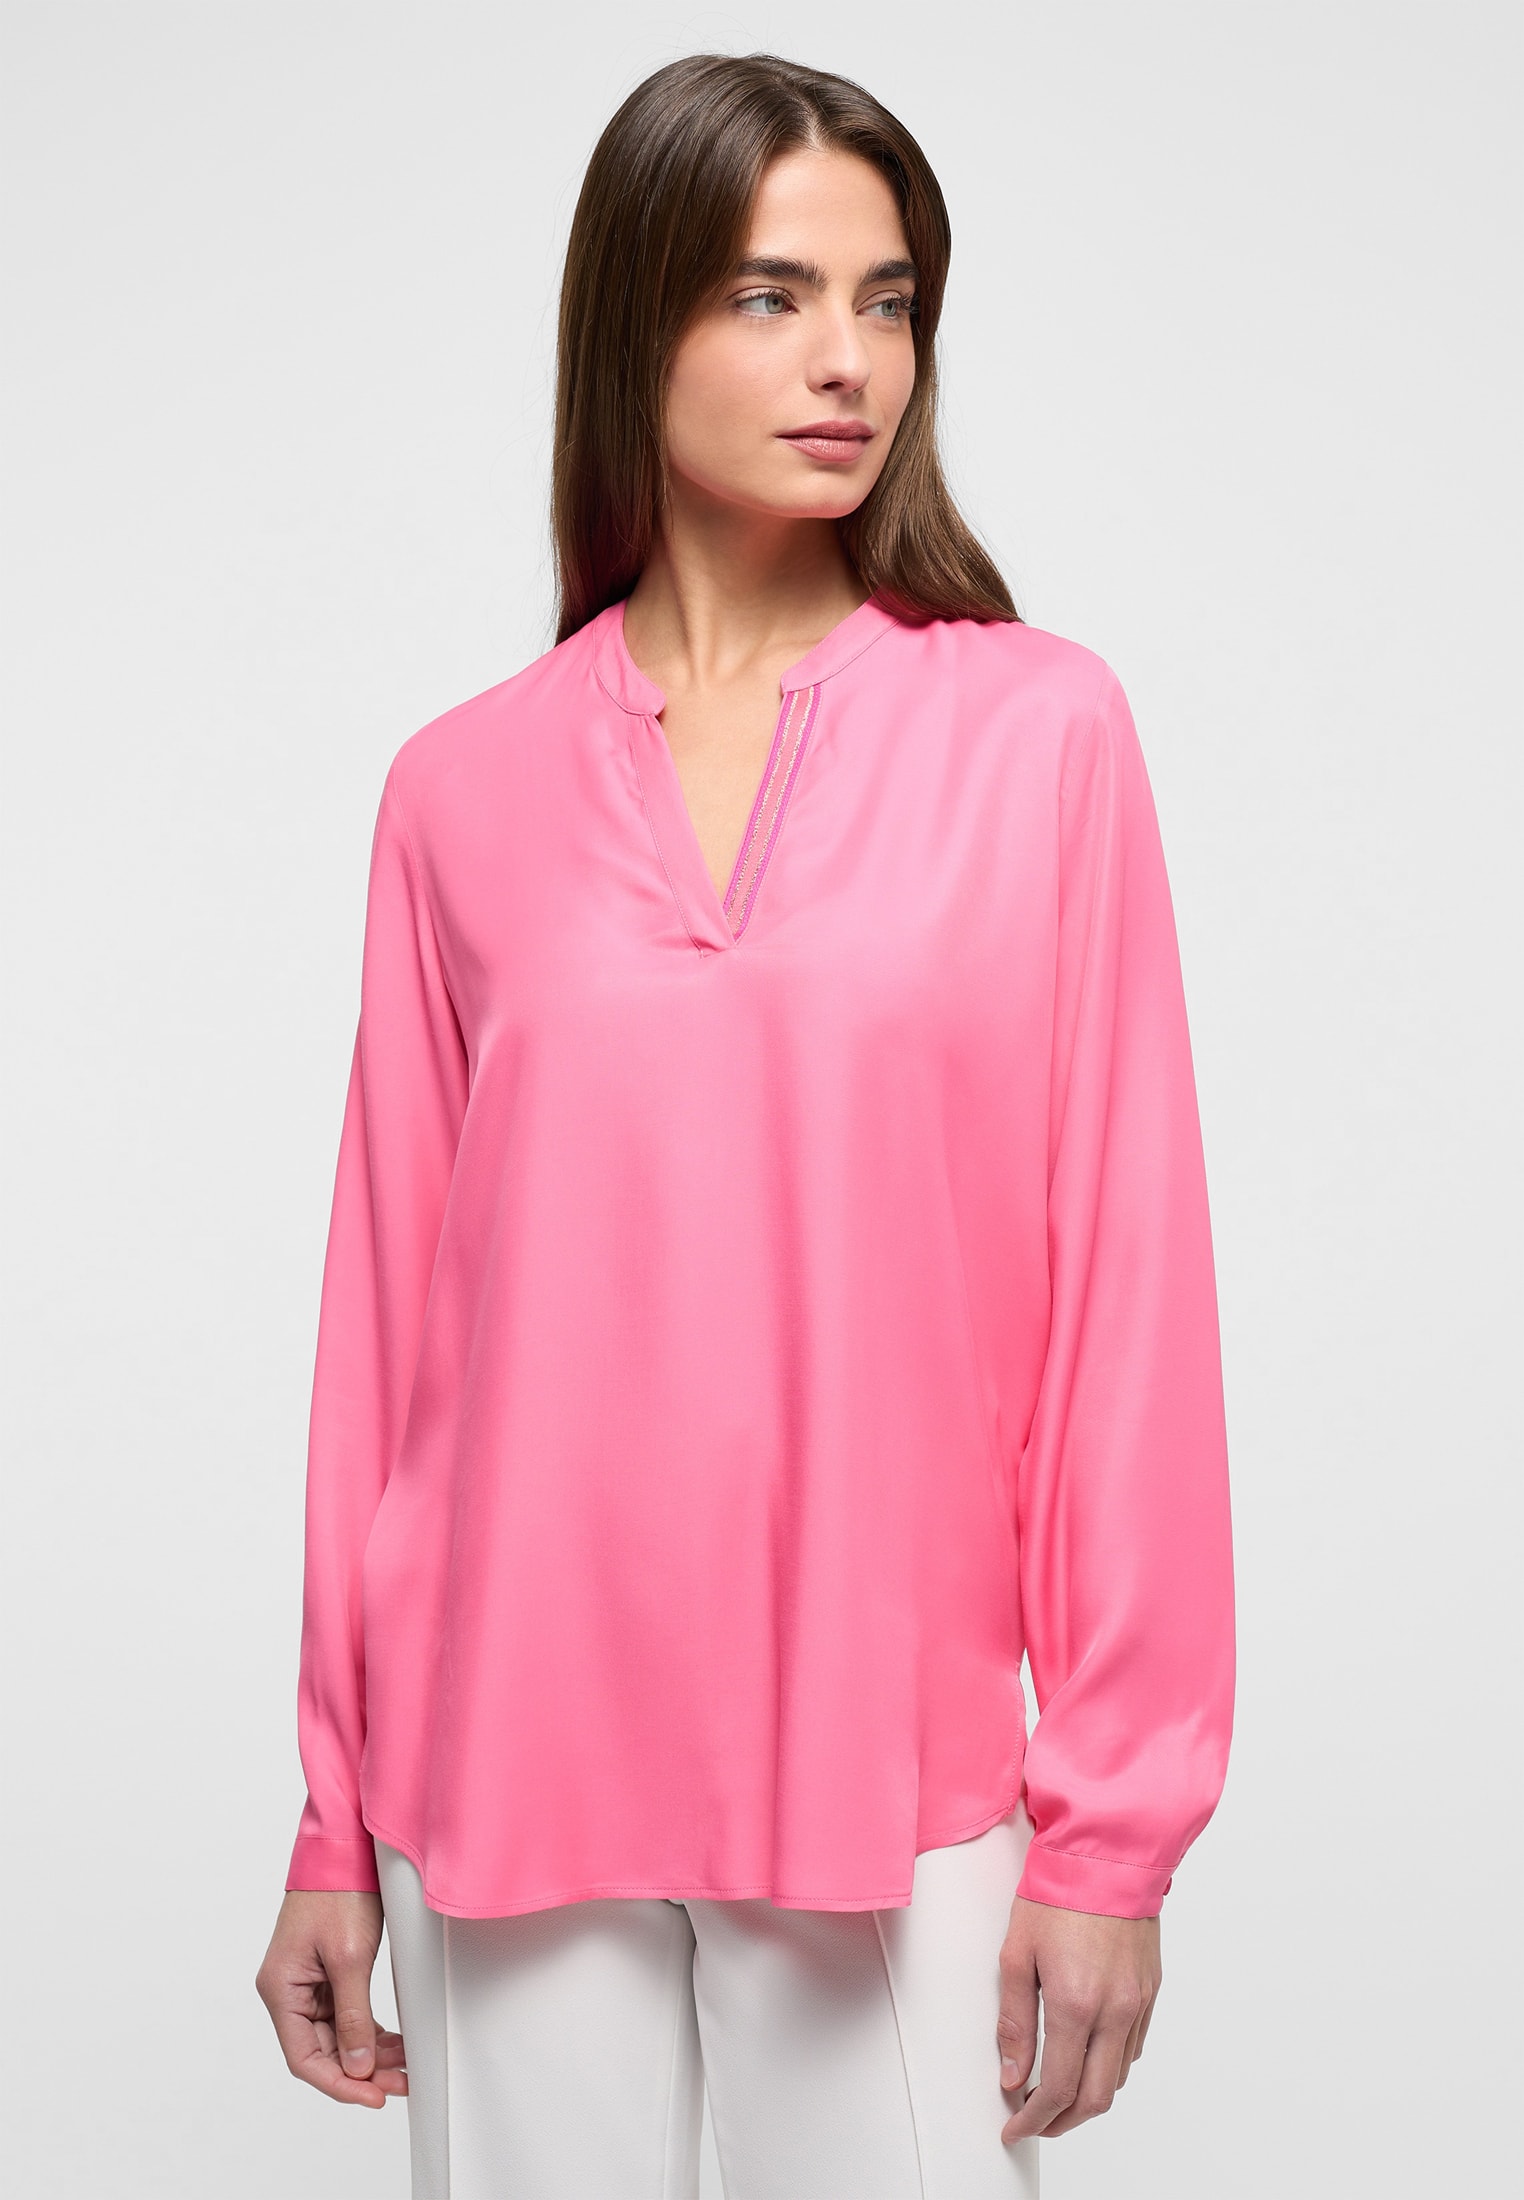 Viscose Shirt Bluse 42 in unifarben | Langarm pink pink | | | 2BL04272-15-21-42-1/1